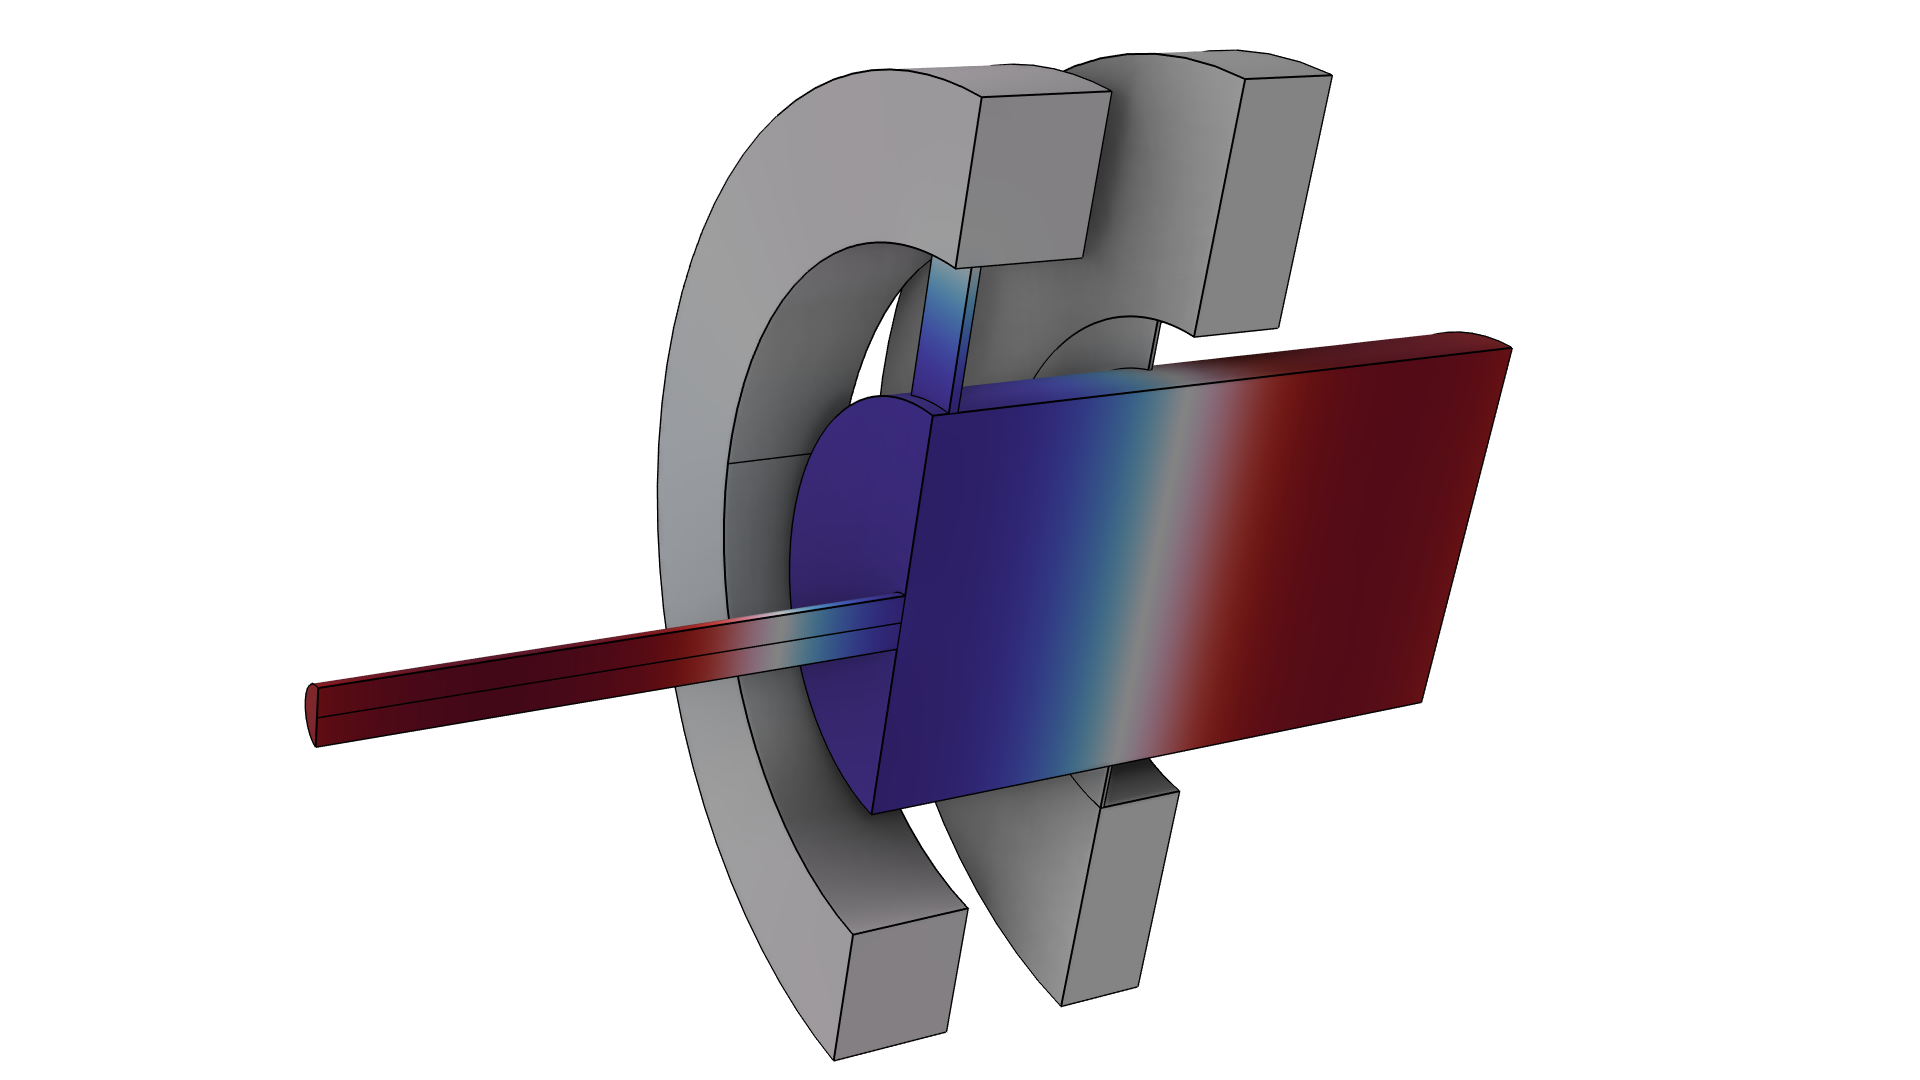 以 Wave 颜色表显示的管-耦合器模型。